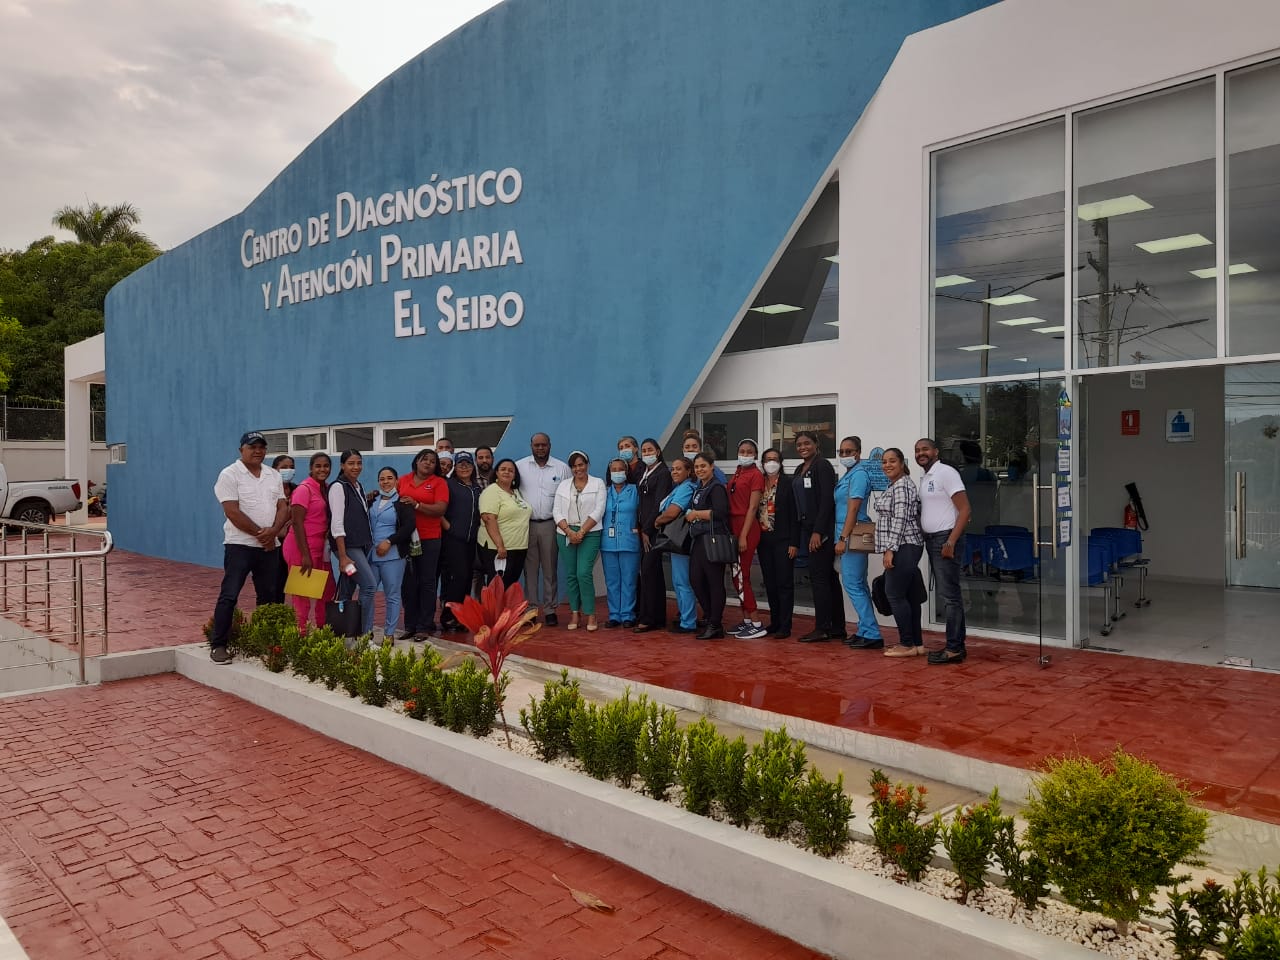 You are currently viewing Director SRS Este visita Centro Clínico y Diagnóstico de El Seibo